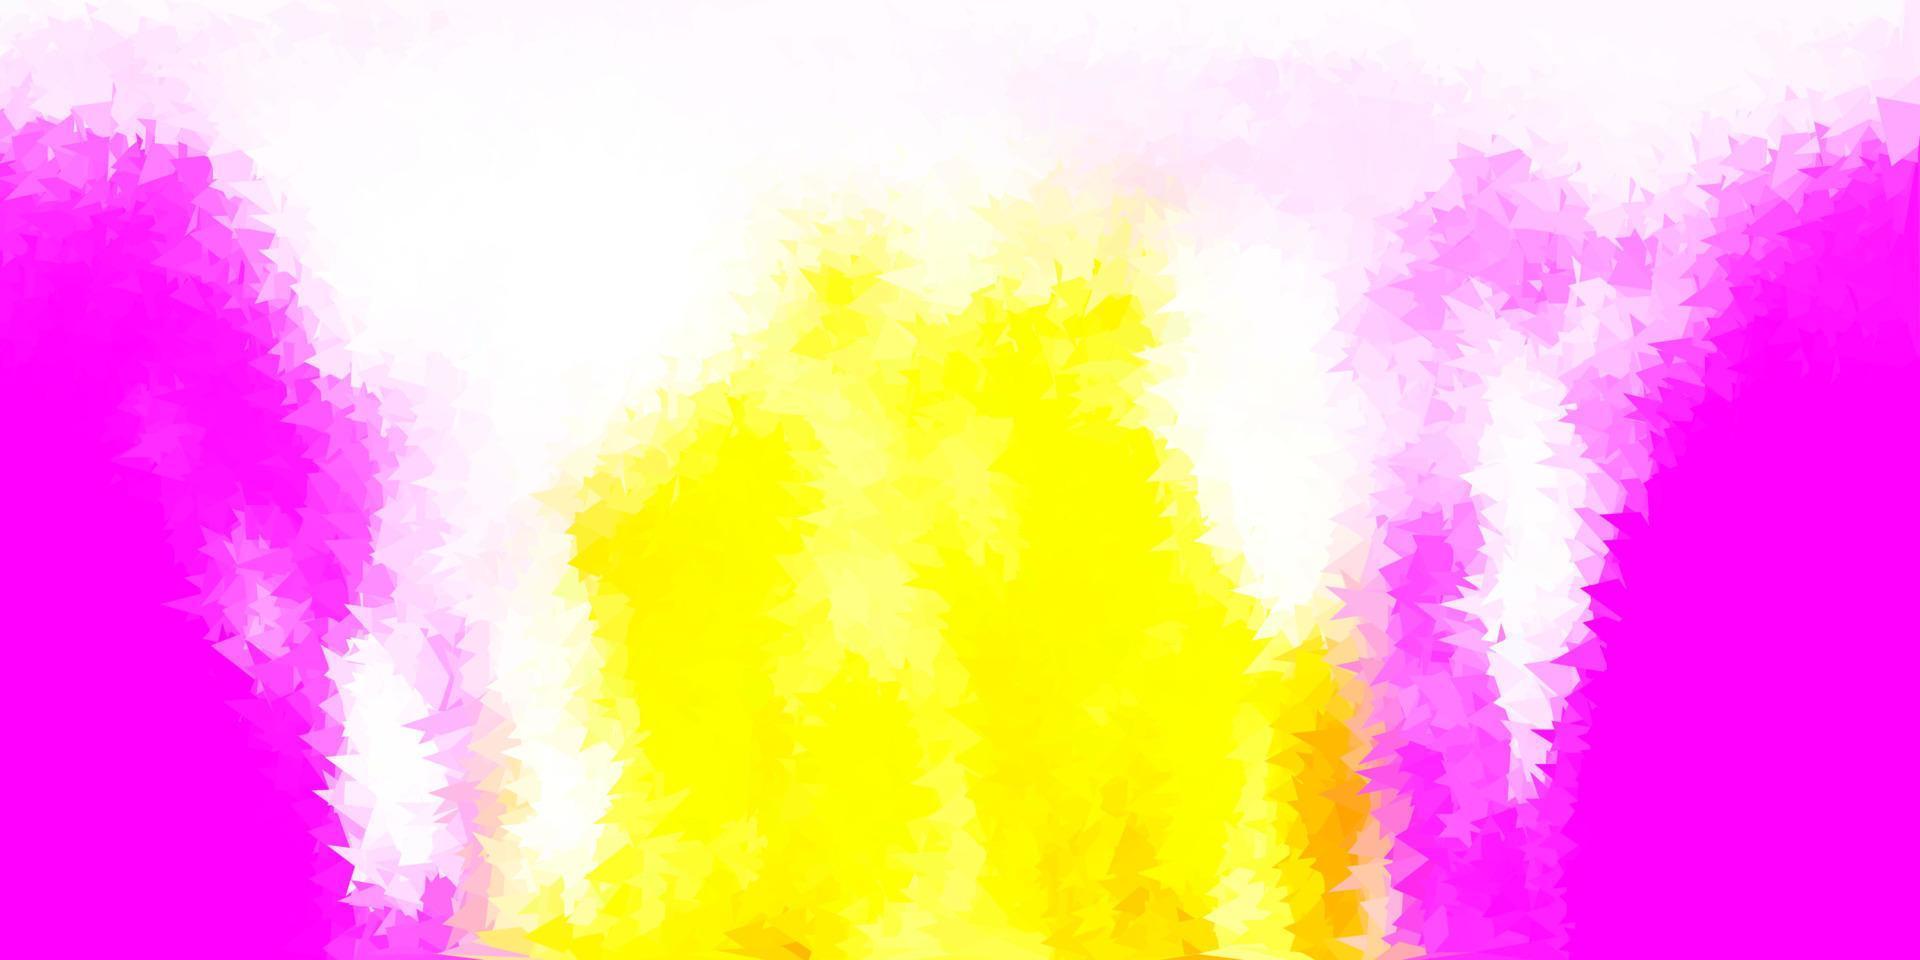 pano de fundo poligonal do vetor rosa claro, amarelo.